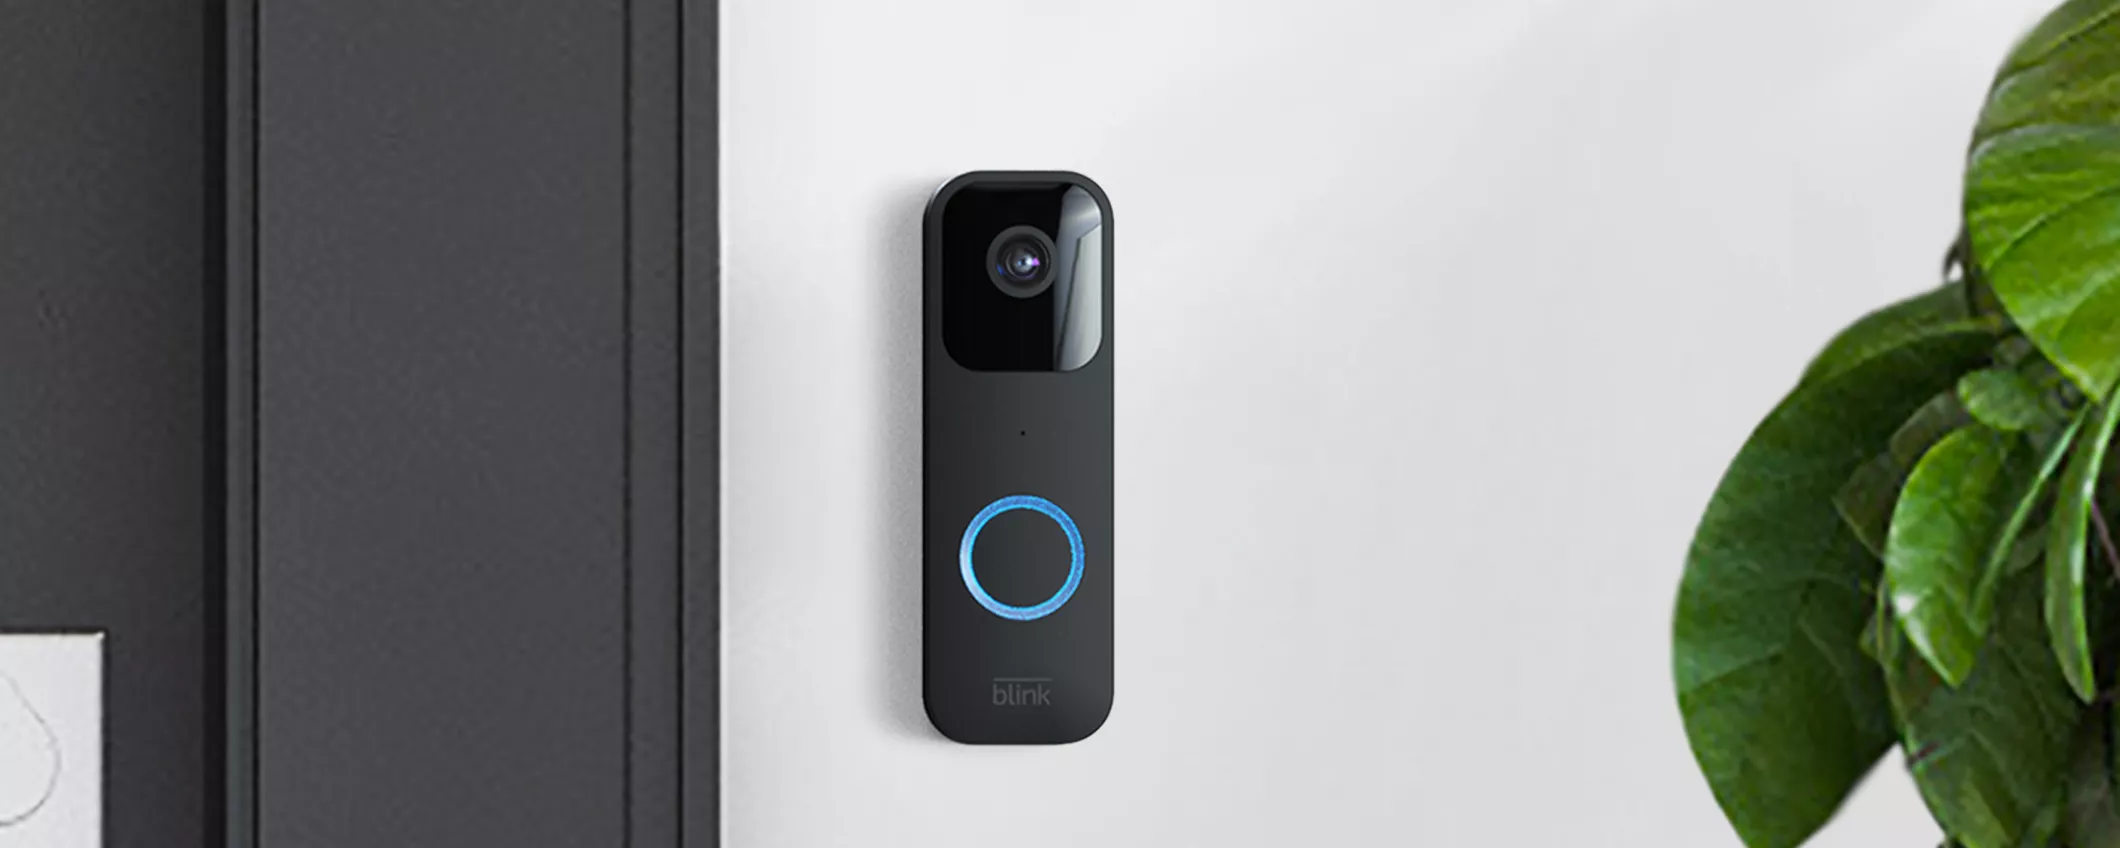 La tua casa più sicura con Blink Video Doorbell, il videocitofono super scontato